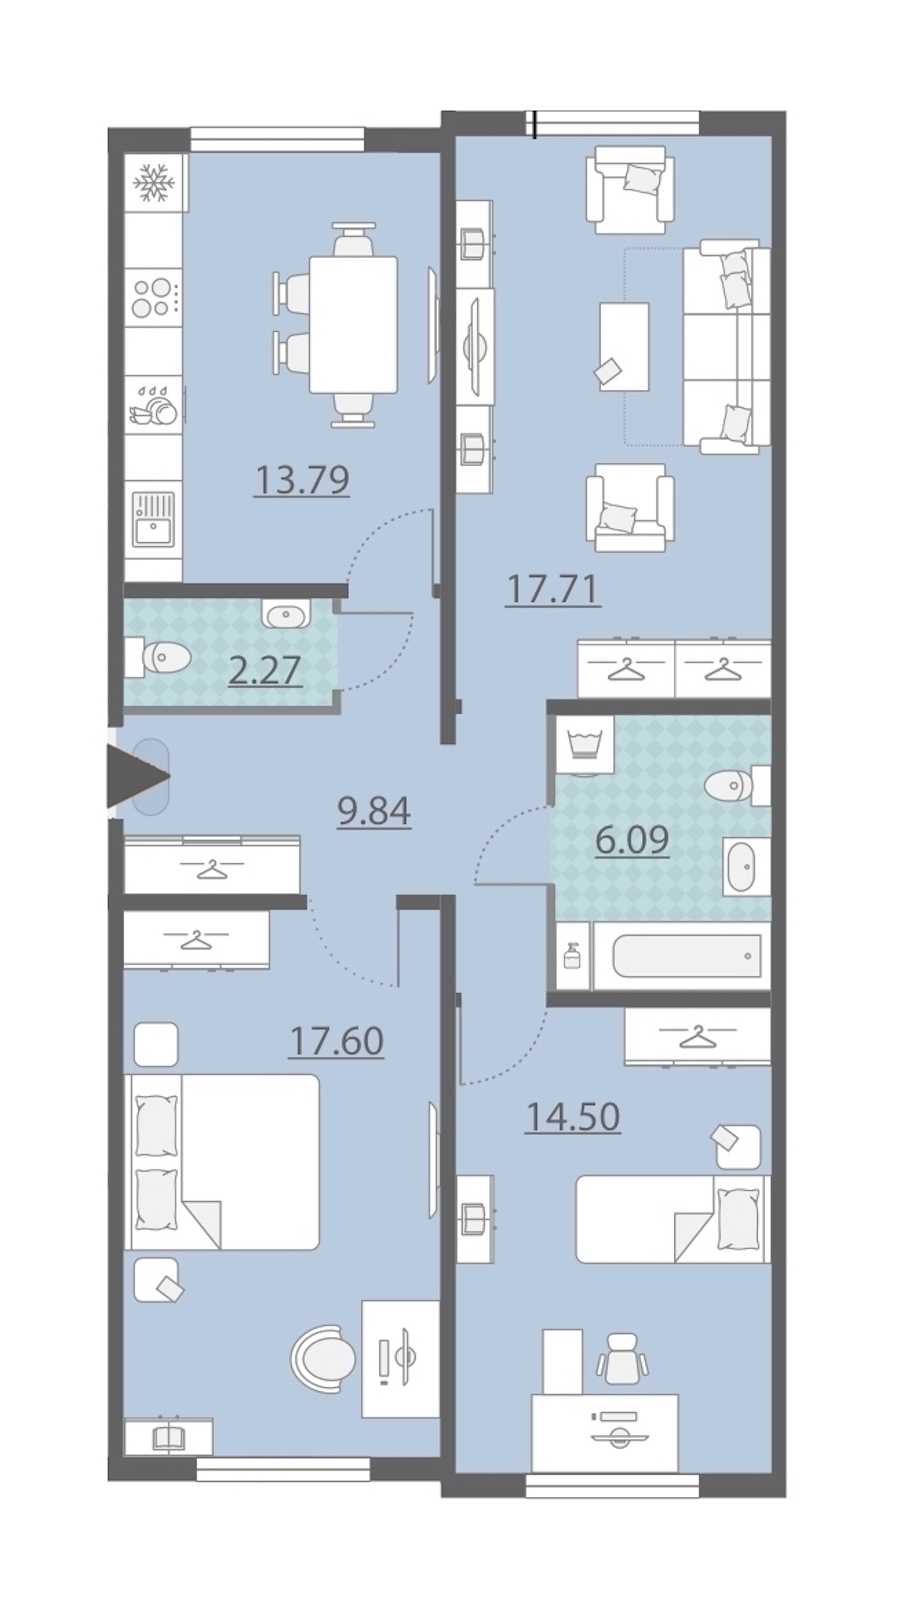 Трехкомнатная квартира в : площадь 81.8 м2 , этаж: 1 – купить в Санкт-Петербурге